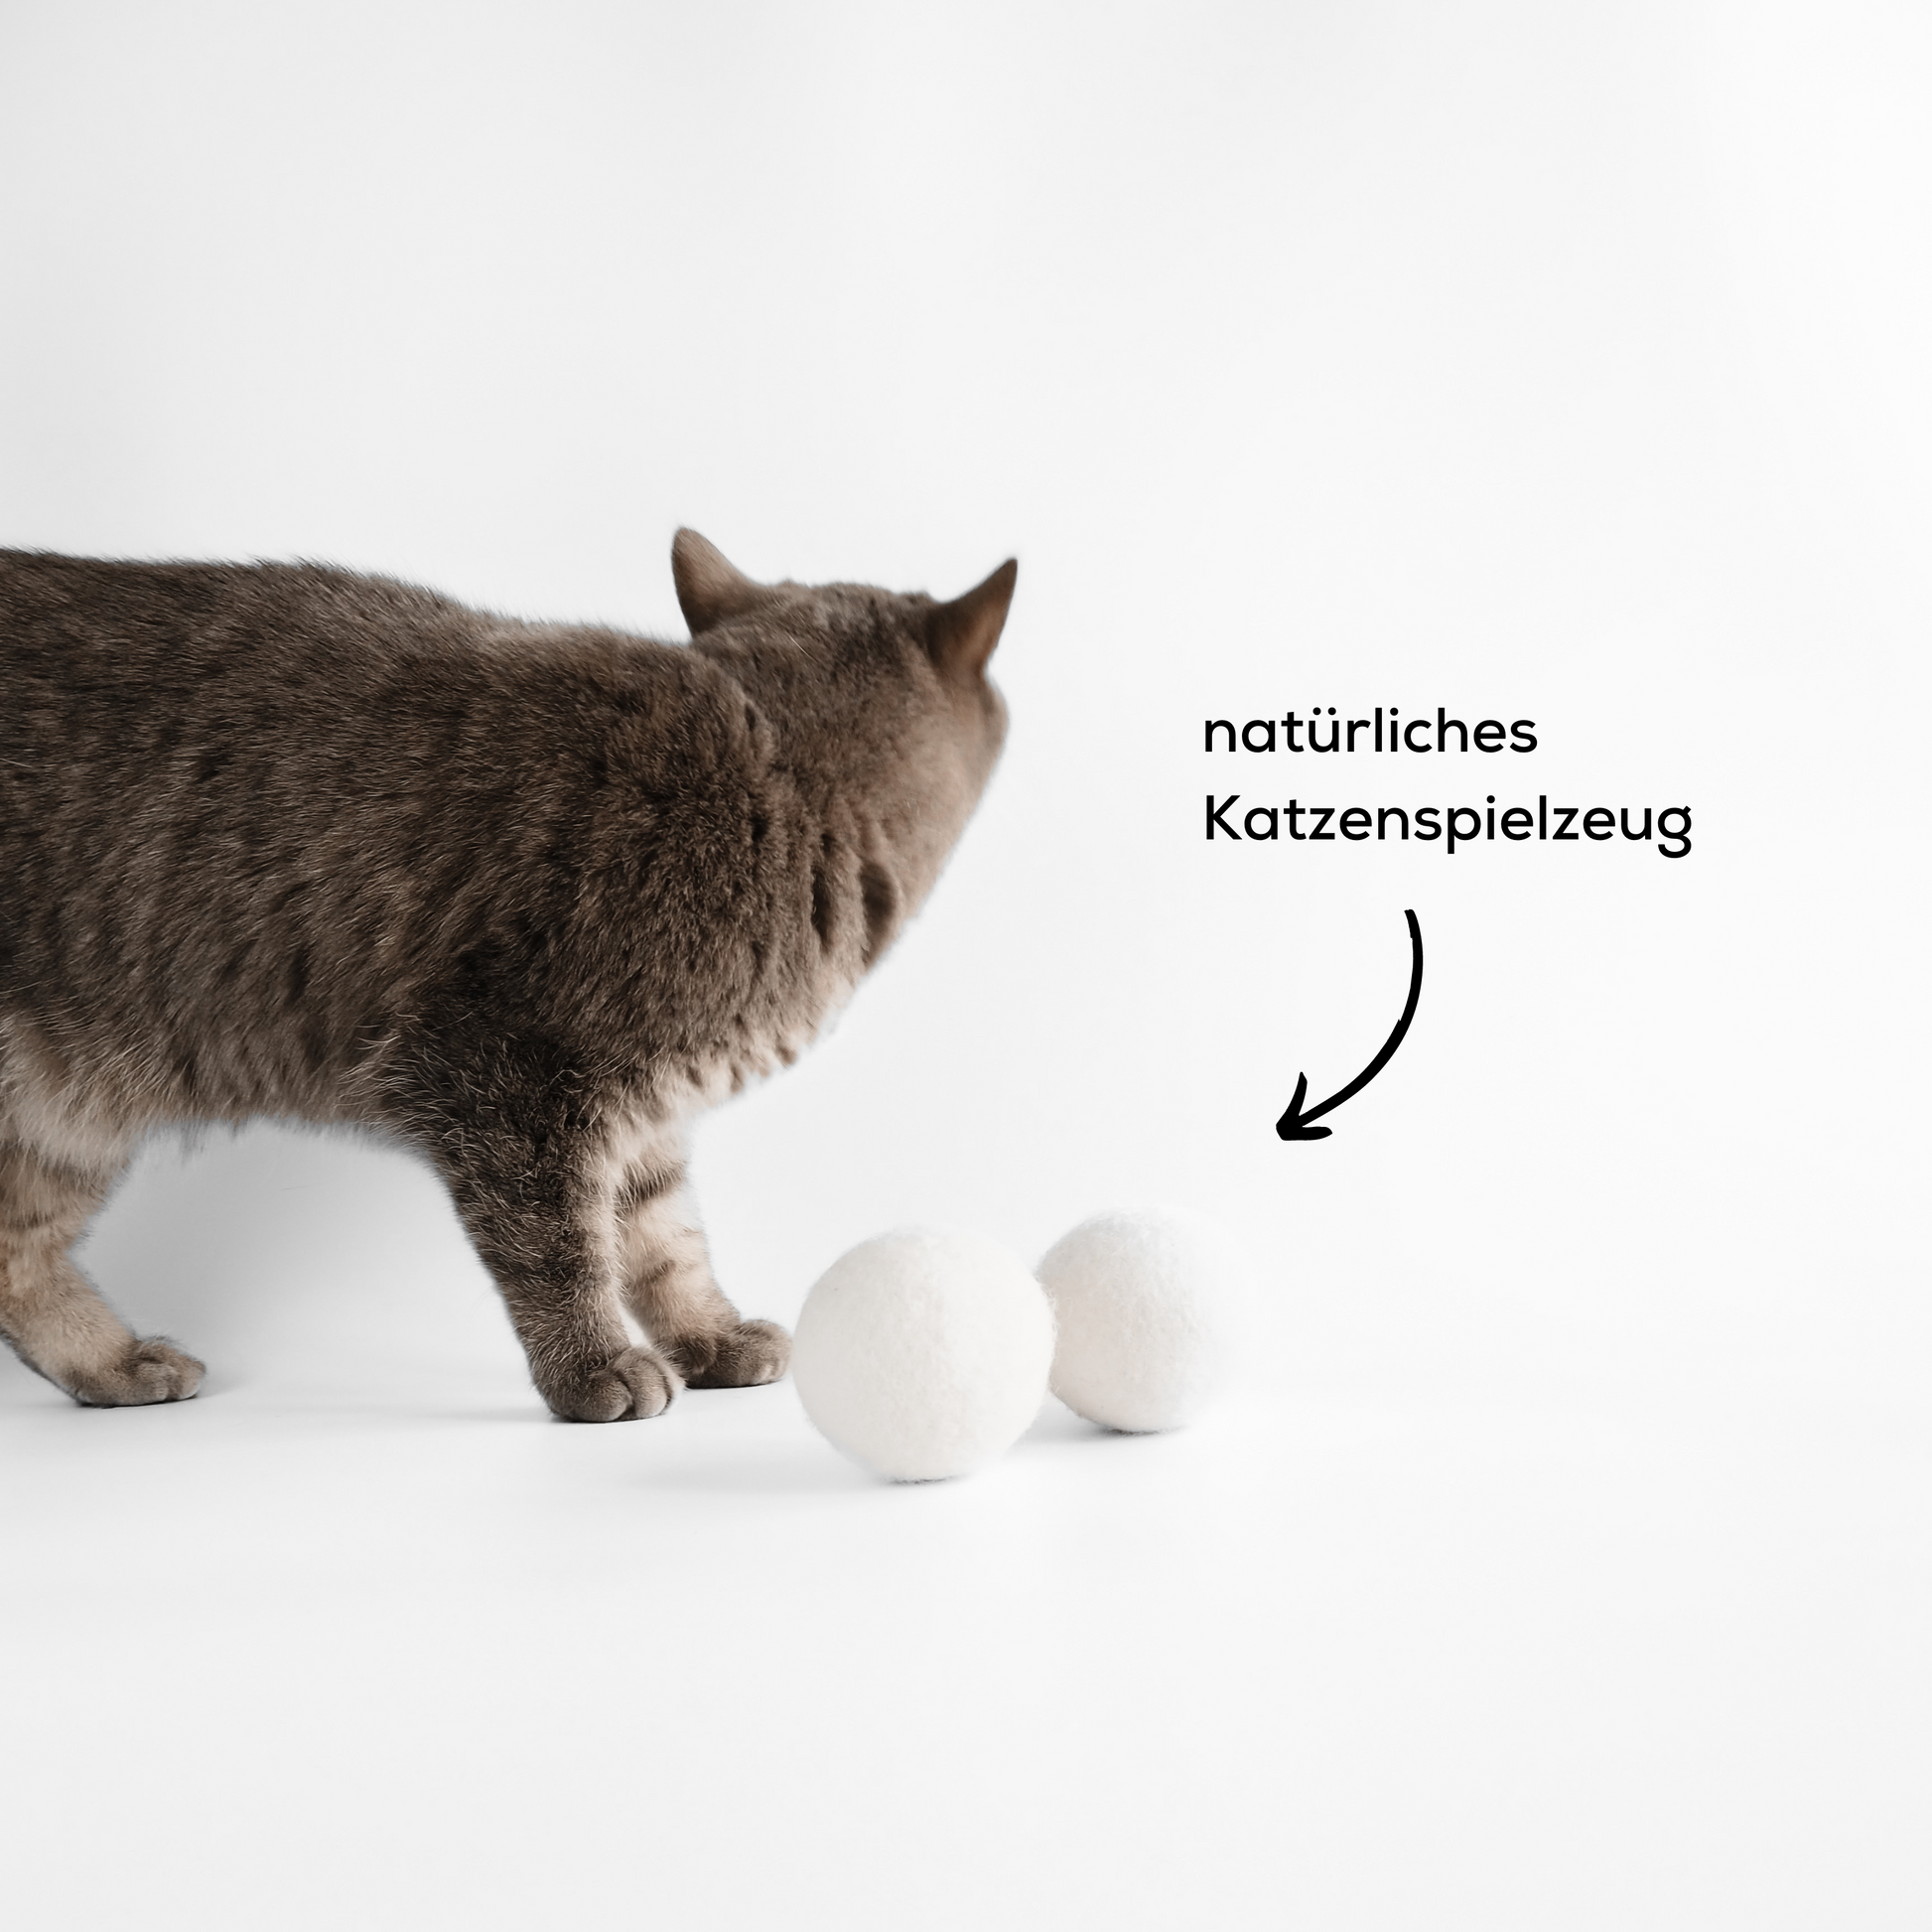 Katze spielt mit natürlichem Katzenspielzeug, Bälle aus Filz.